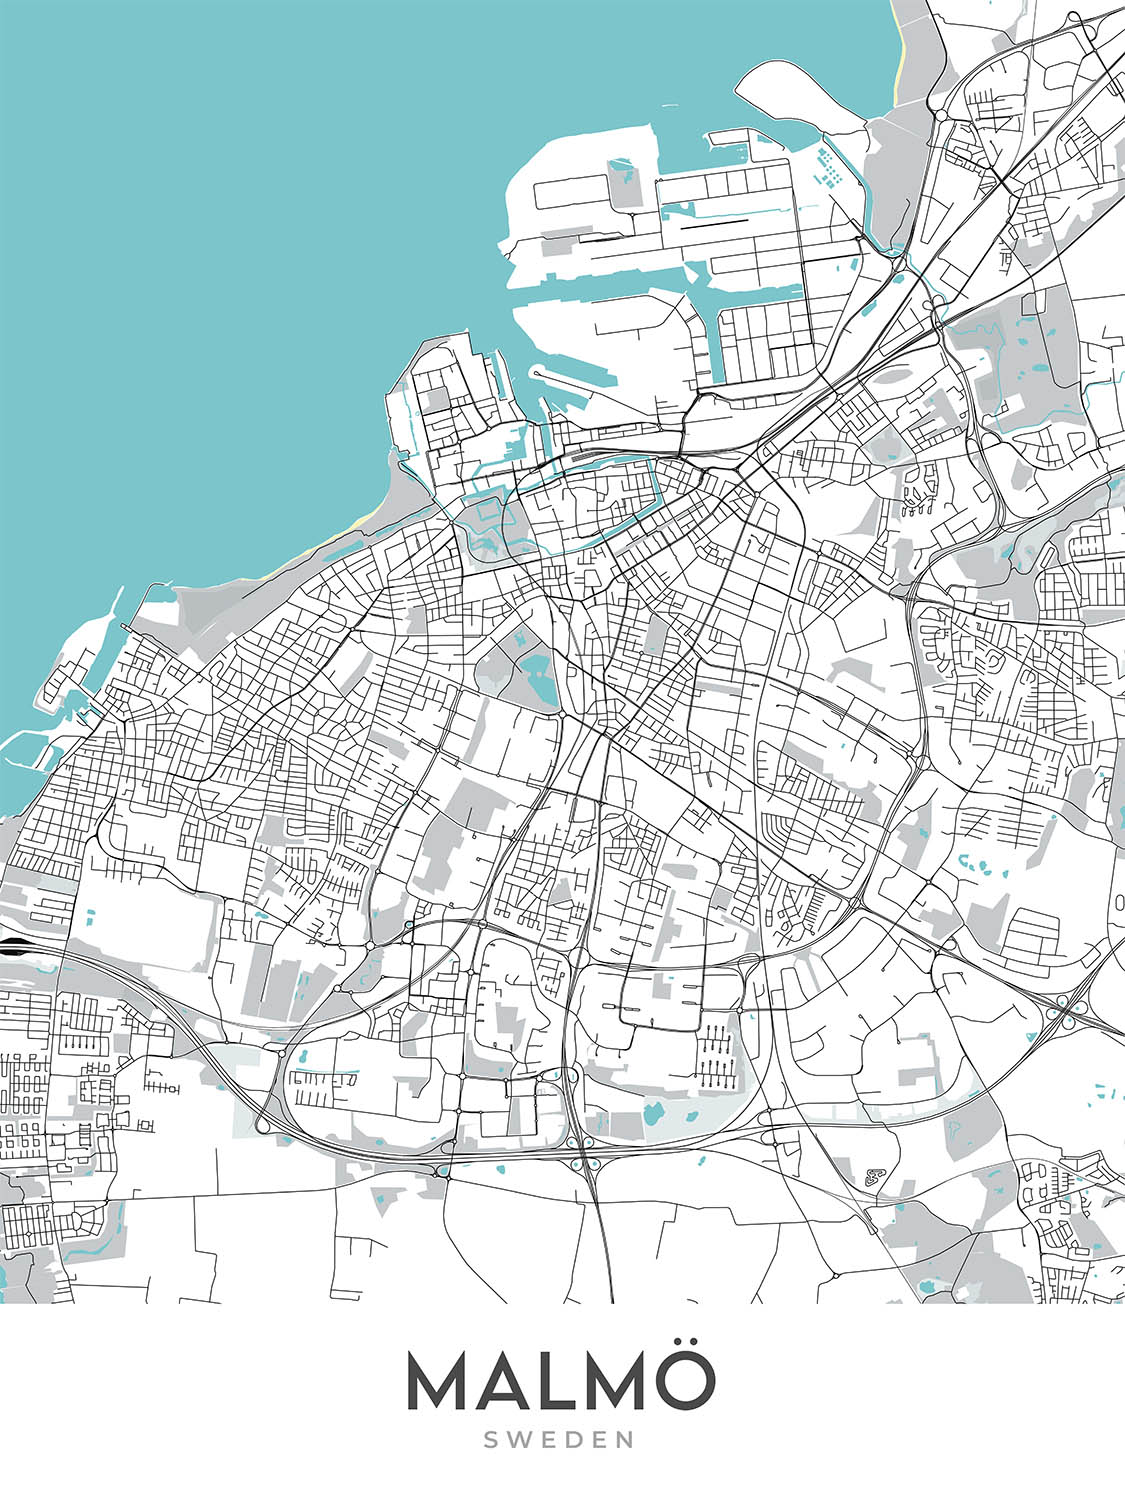 Moderner Stadtplan von Malmö, Schweden: Västra Innerstaden, Östra Innerstaden, Möllevången, Gamla Staden, E20